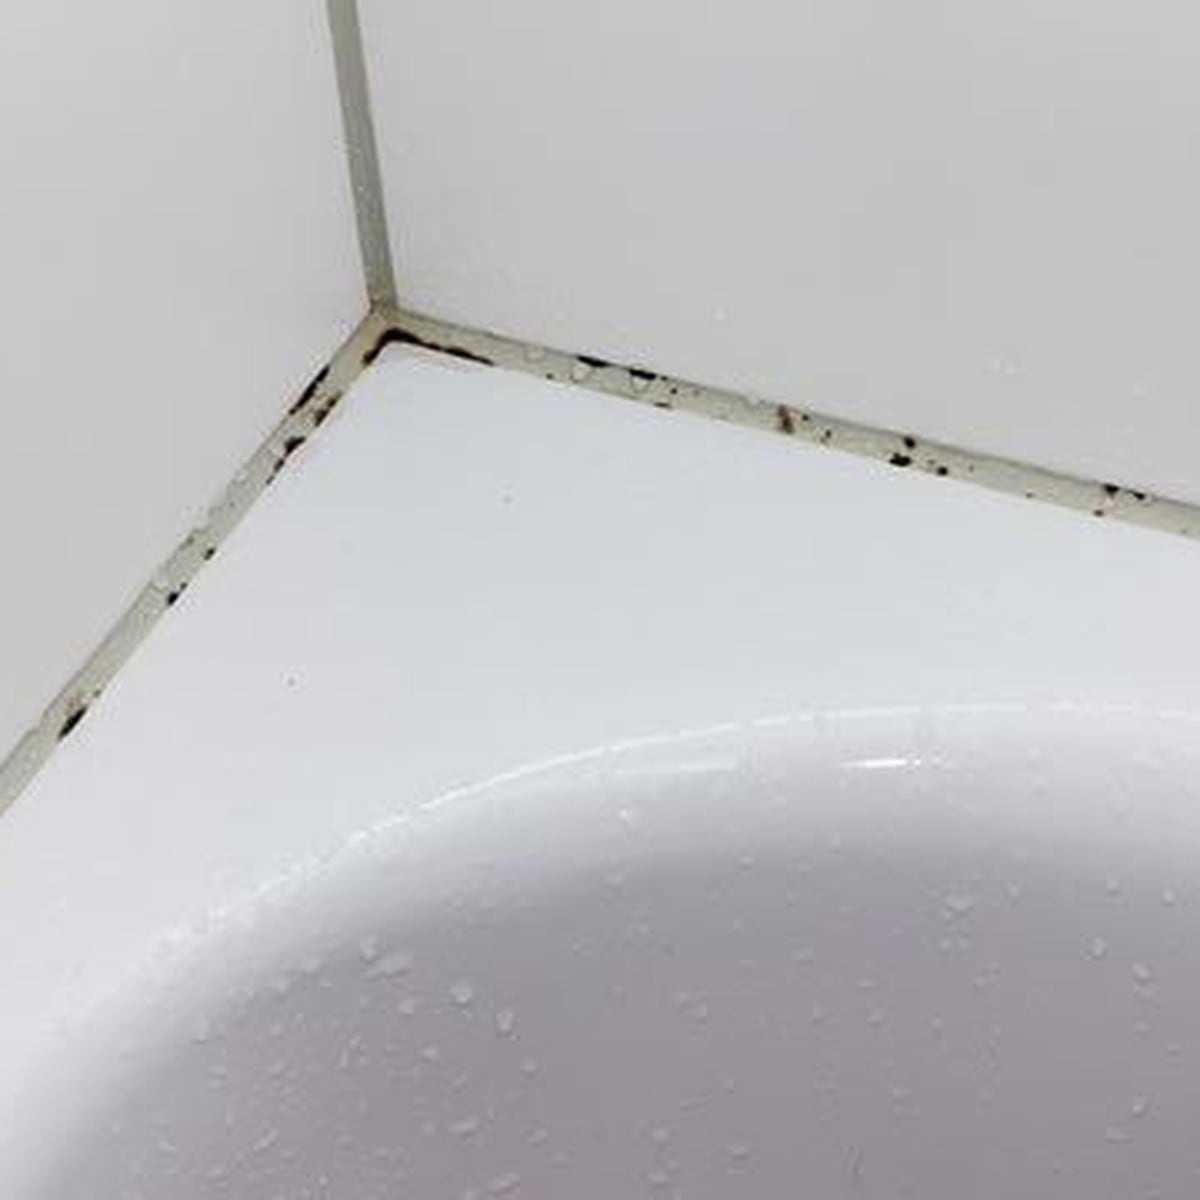 Limpiar el moho del baño - Hogarmania 